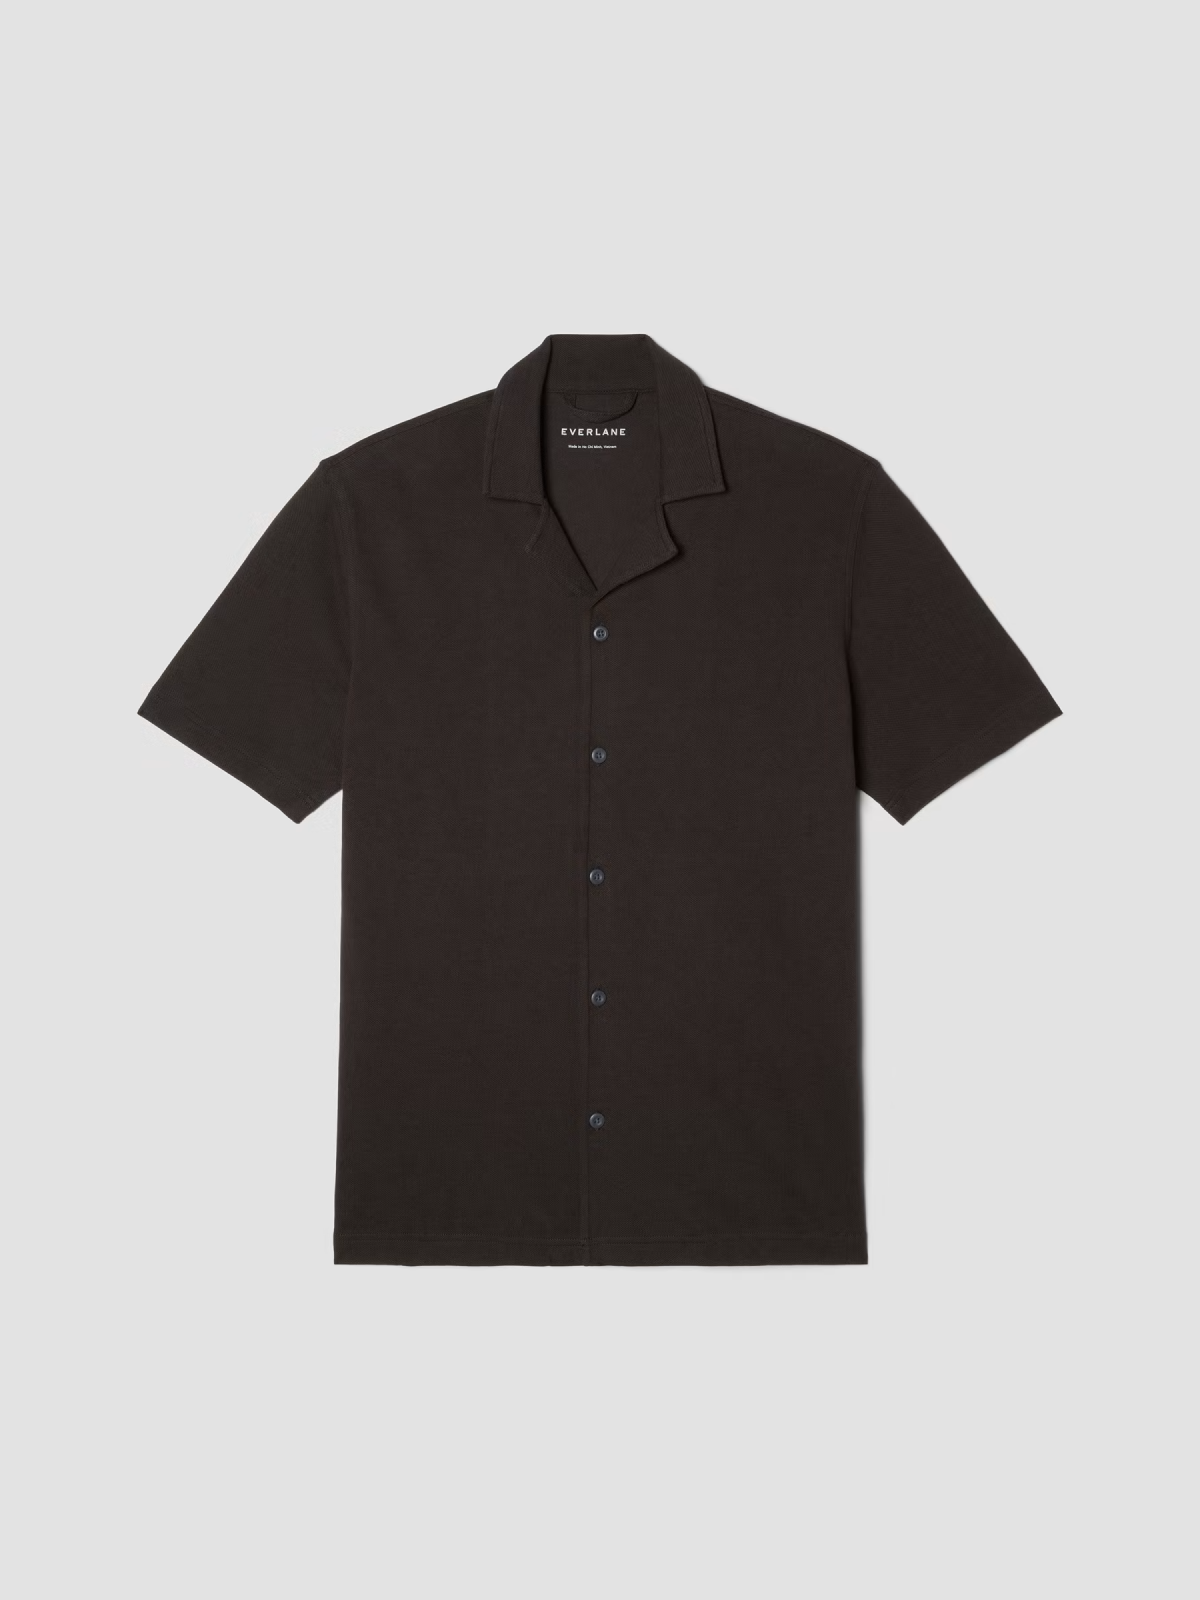 The Pique Short-Sleeve Shirt